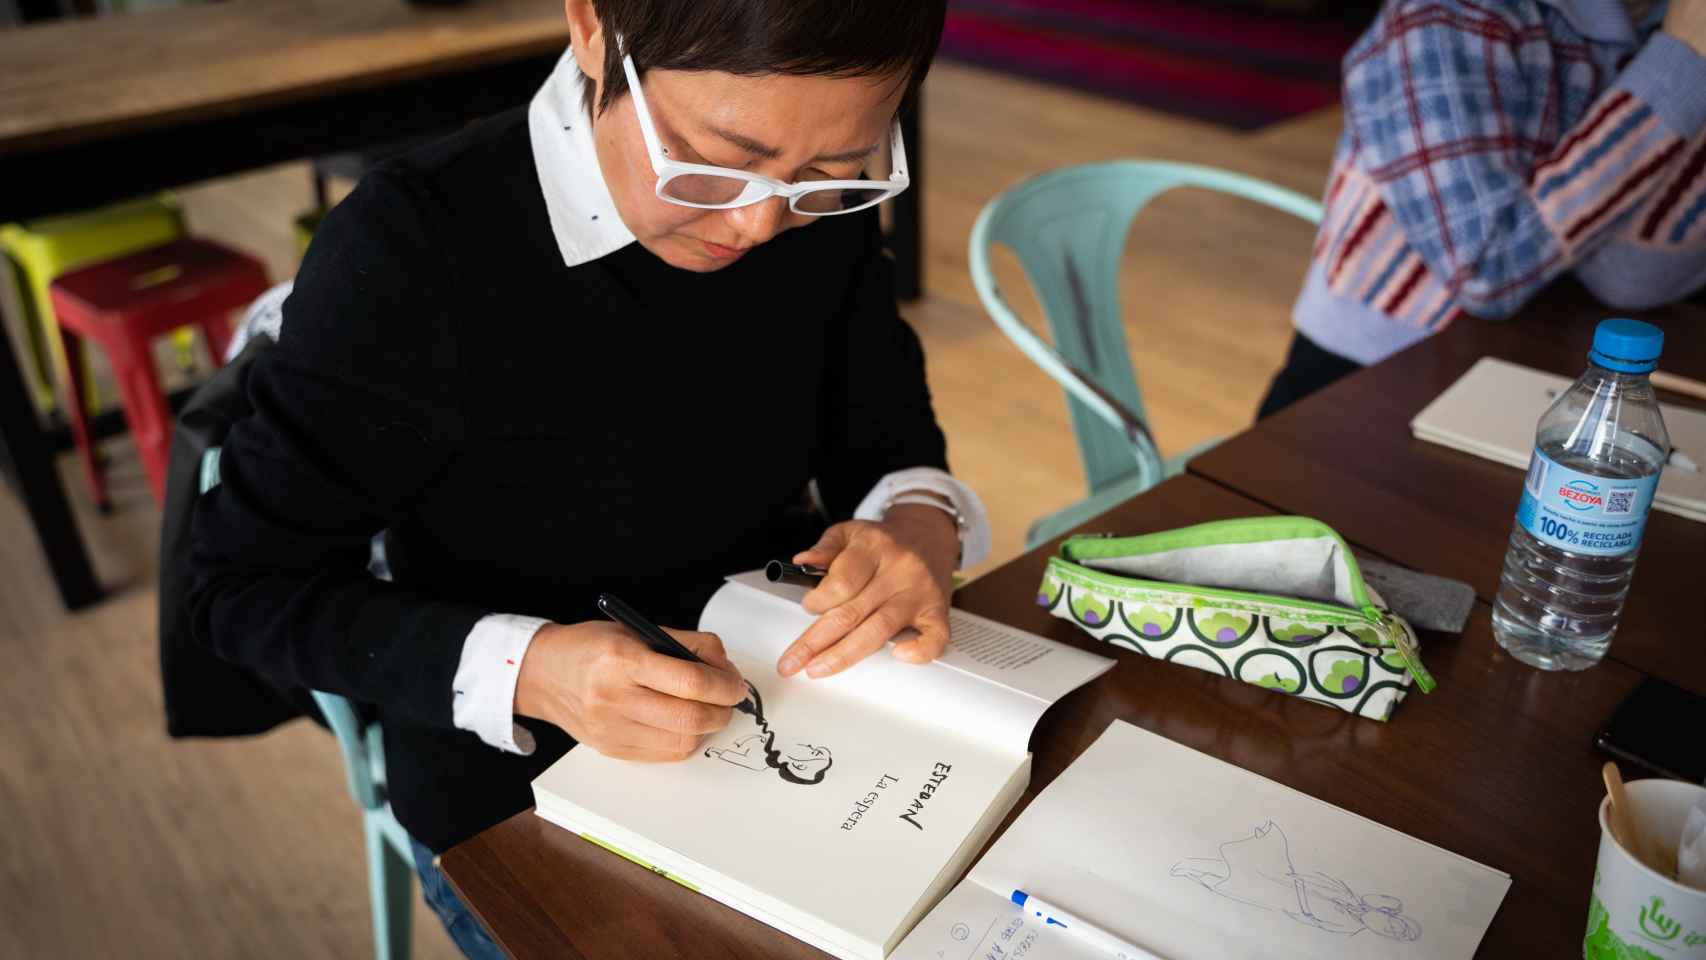 La ilustradora surcoreana Keum Suk Gendry-Kim firmando un ejemplar de su libro 'La Espera'.